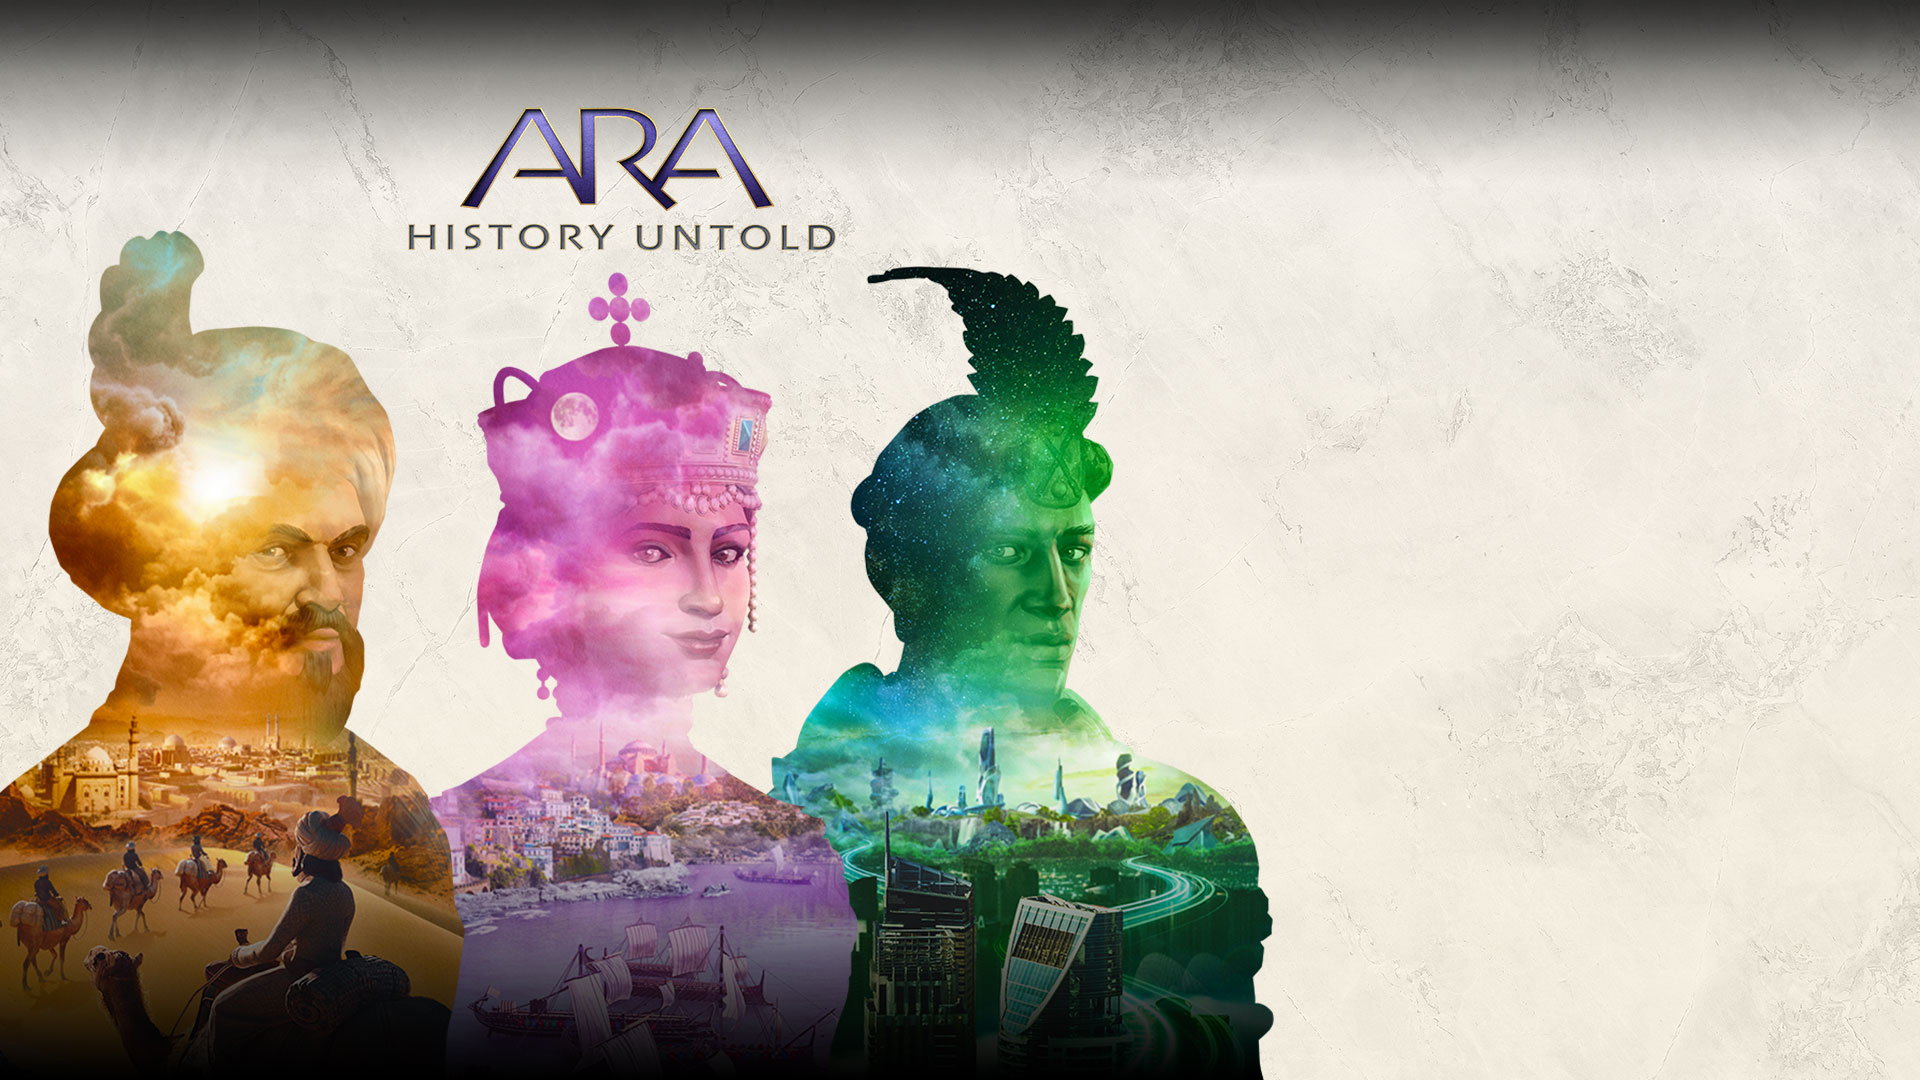 Ara: History Untold. Tři průhledné osoby se scénami z různých měst uvnitř jejich siluet.